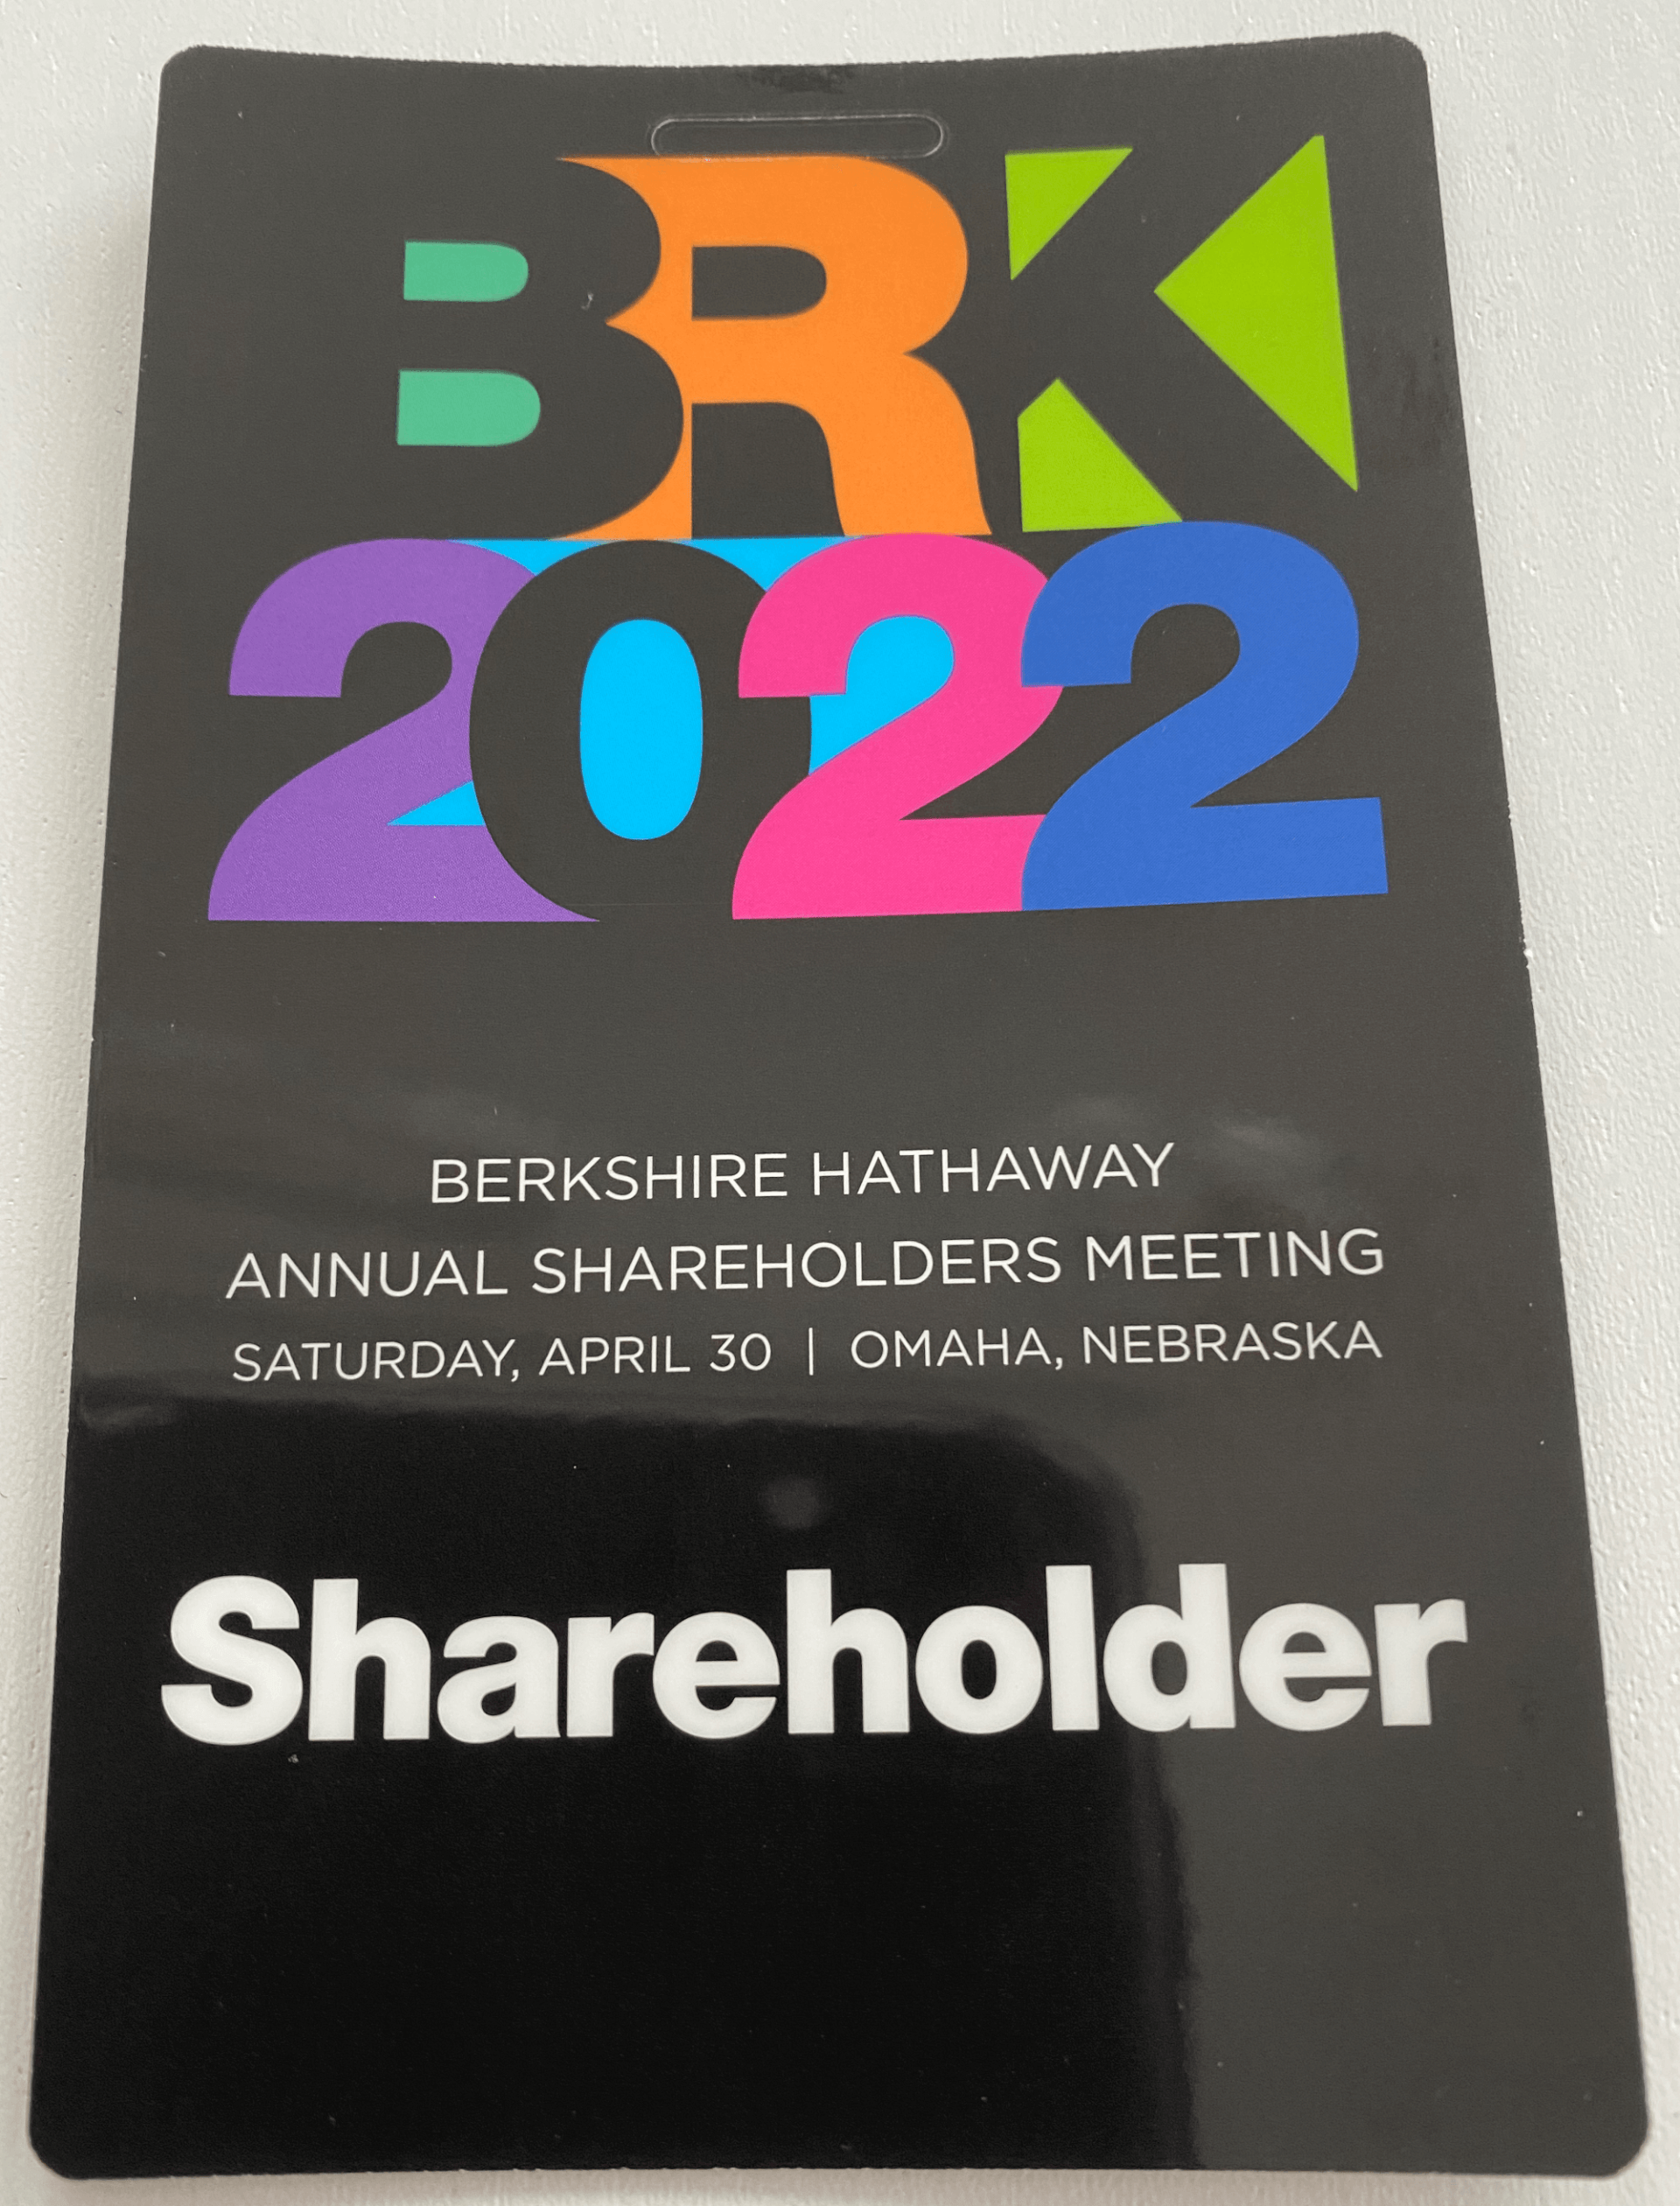 Eintrittspass (Credentials) Berkshire Hathaway Generalversammlung 2022